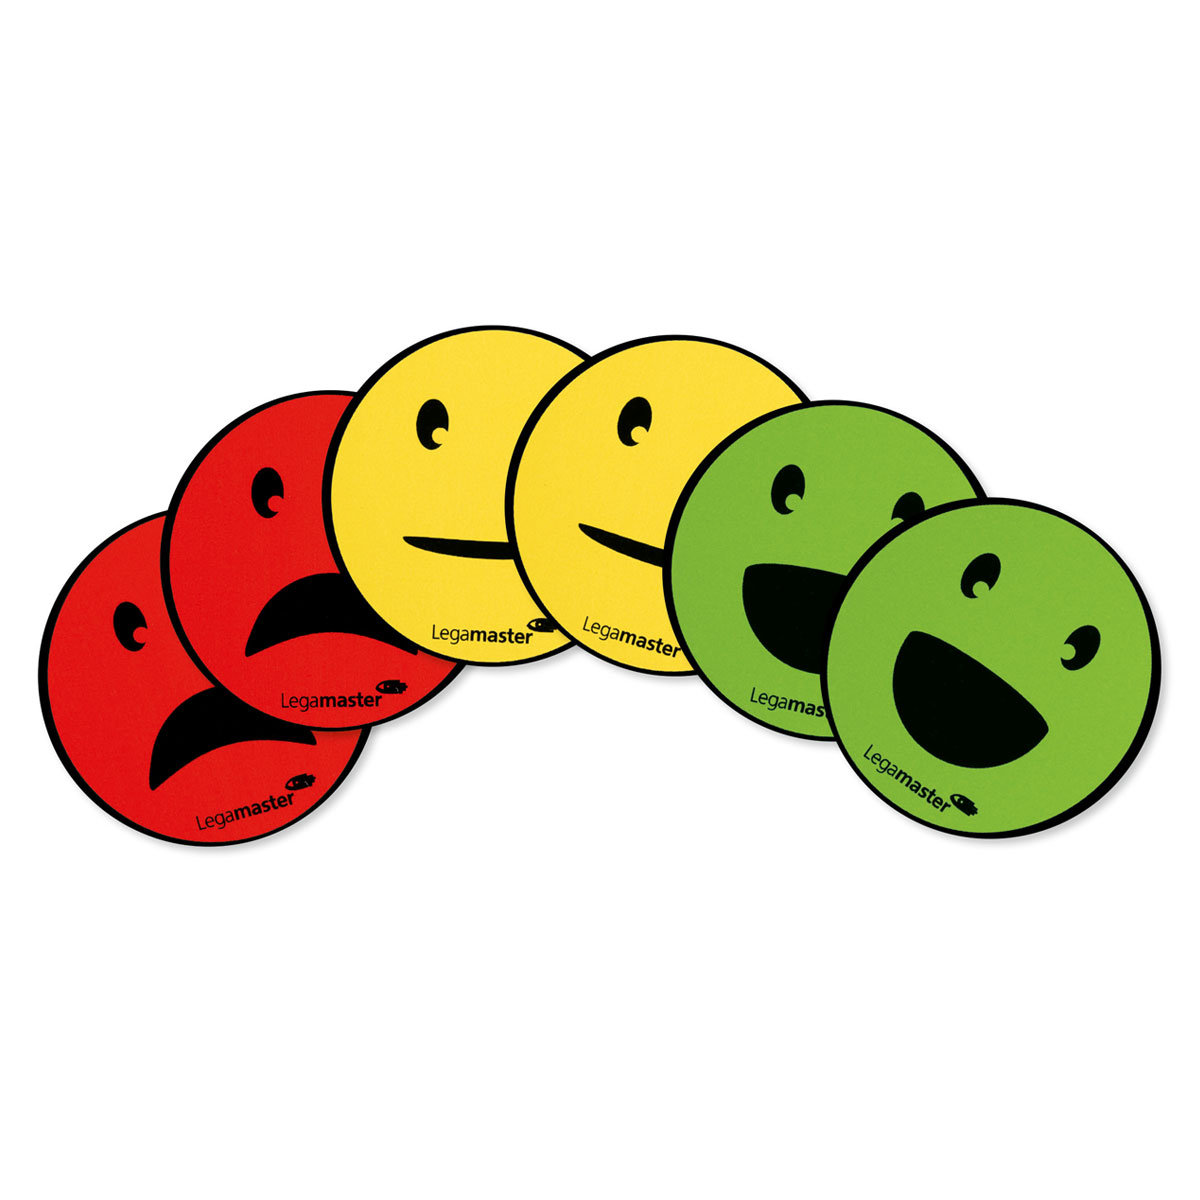 Magnesy okrągłe - buźki: neutralna, usmiechnięta, smutna Średnica: 50 mm, Kolor: żółty, zielony, czerwony, Marka: LEGAMASTER, Ilość w opakowaniu: 6 ..